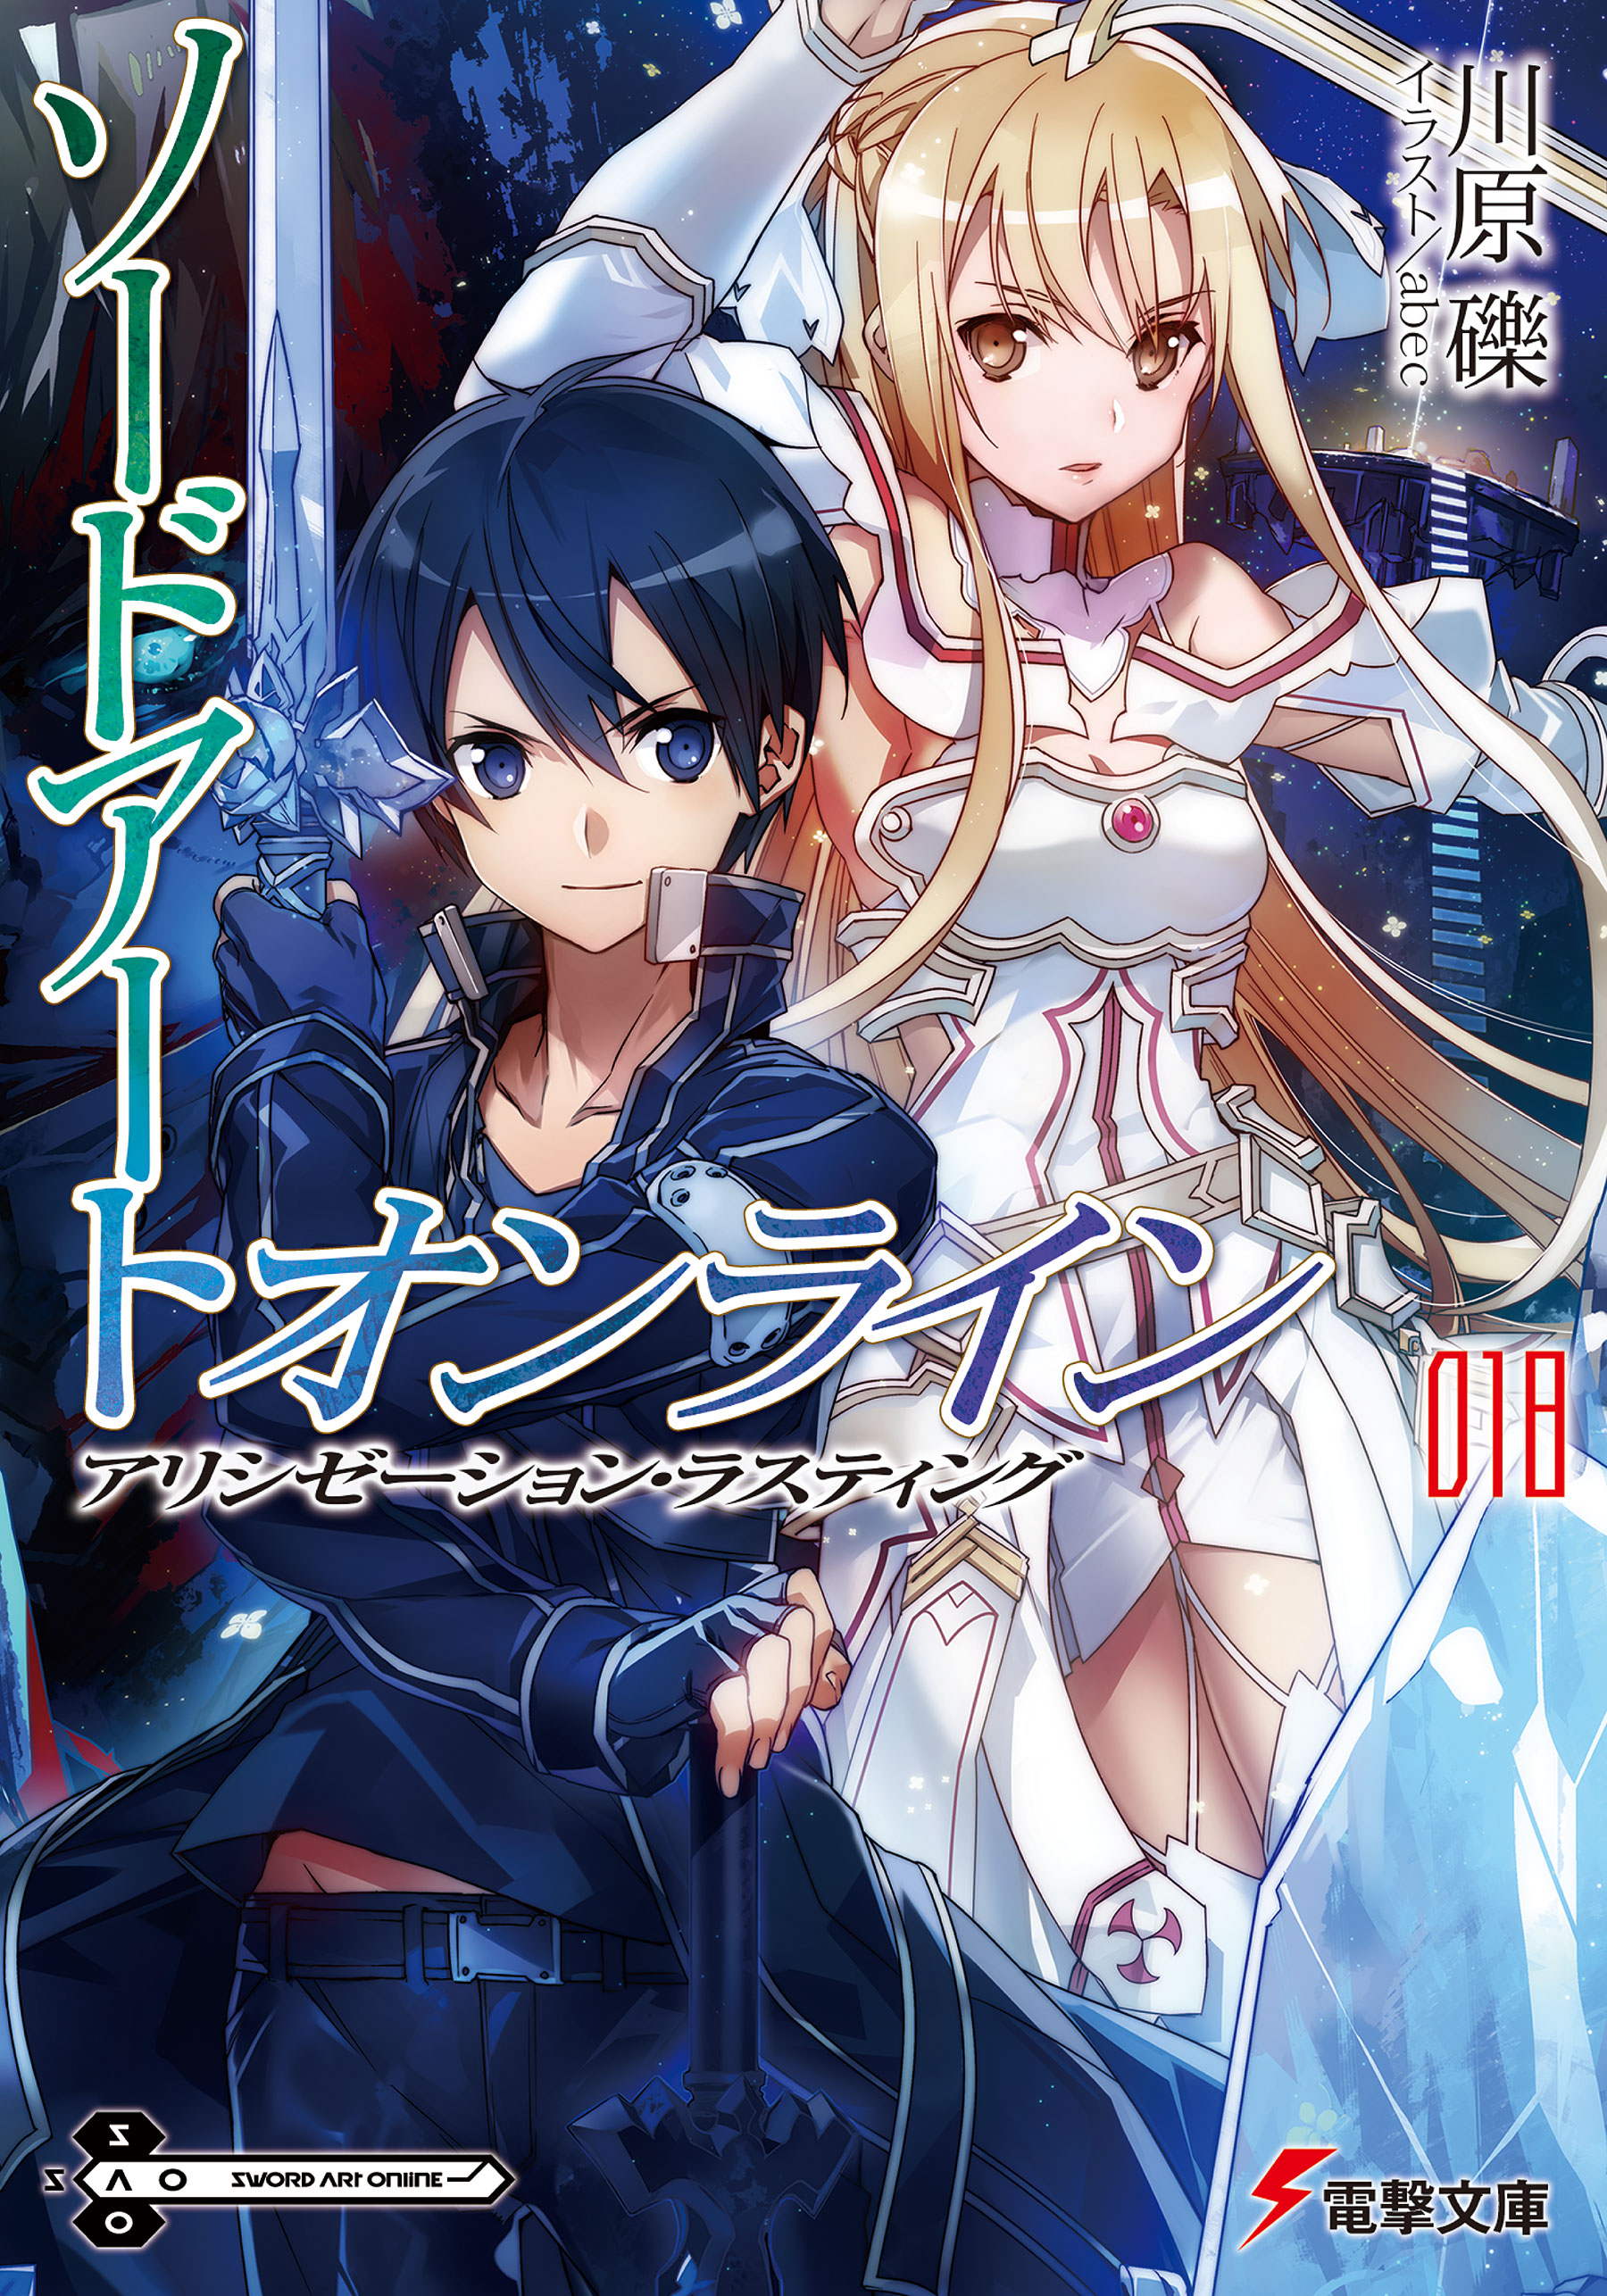 Sword Art Online Light Novel Volume 18 | Sword Art Online Wiki | Fandom